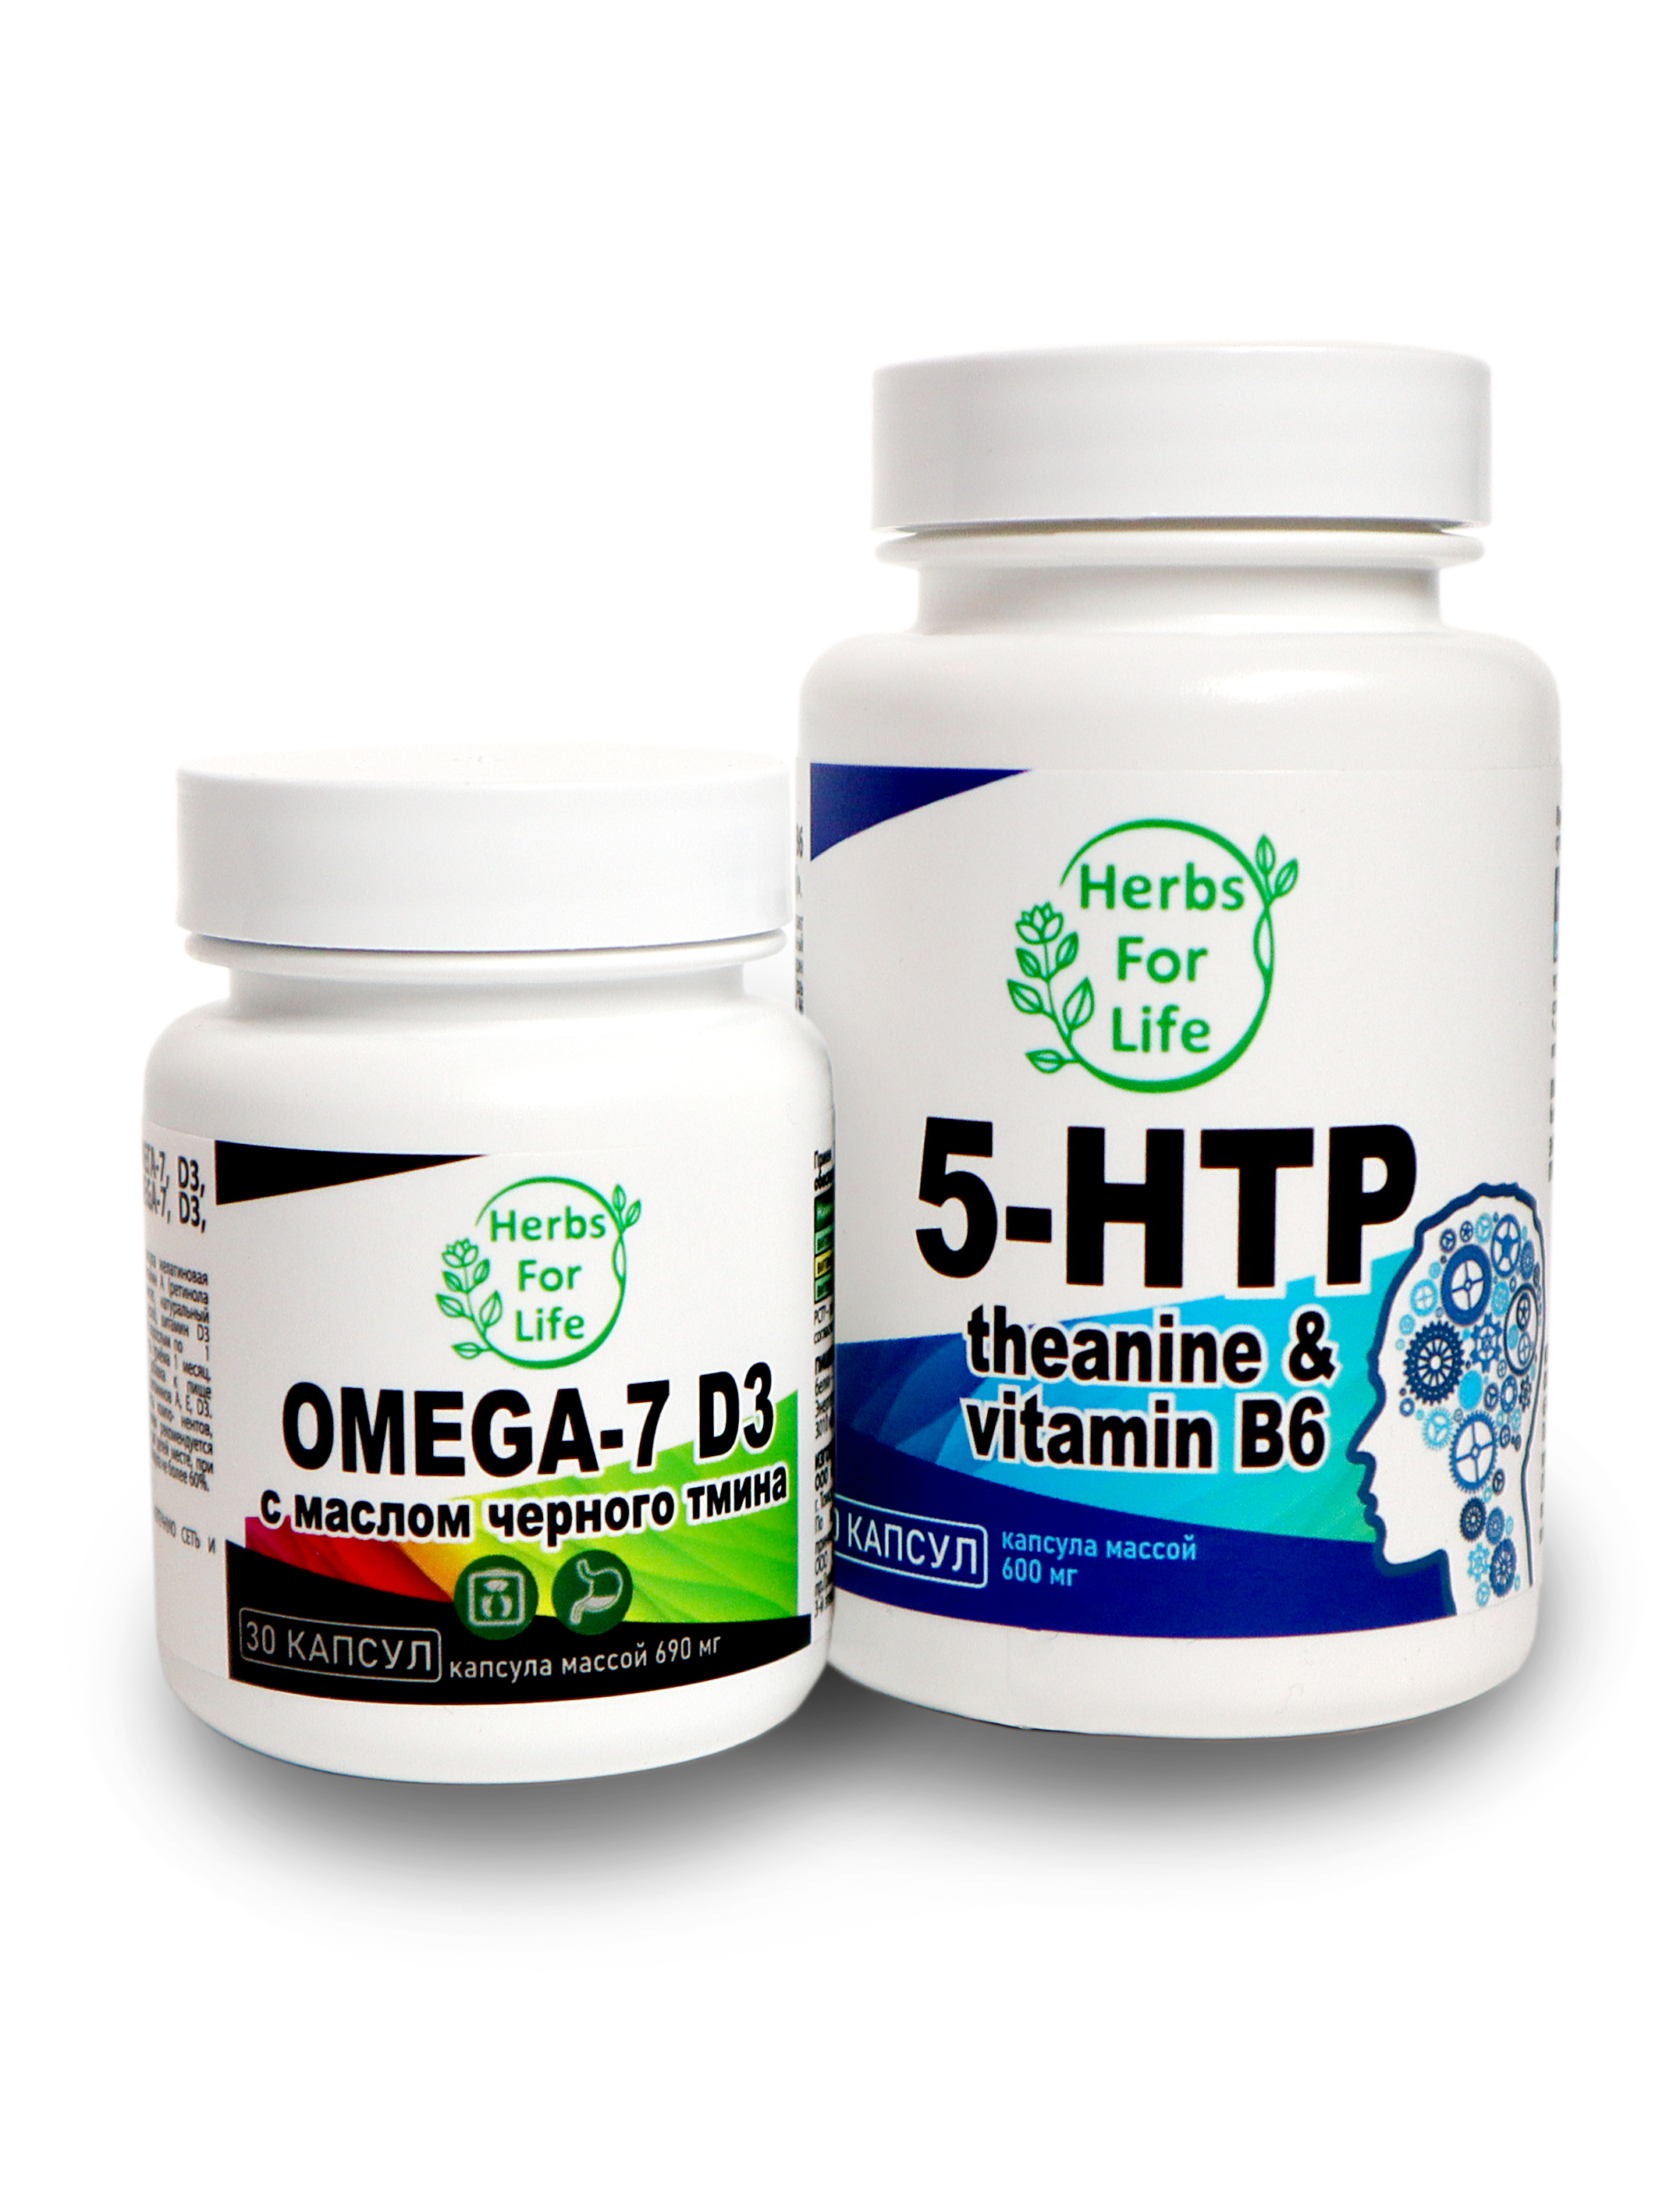 Купить Herbs For Life Omega-7 D3 Black Cumin капсулы 690 мг 30 шт. + 5-HTP капсулы 600 мг 60 шт.